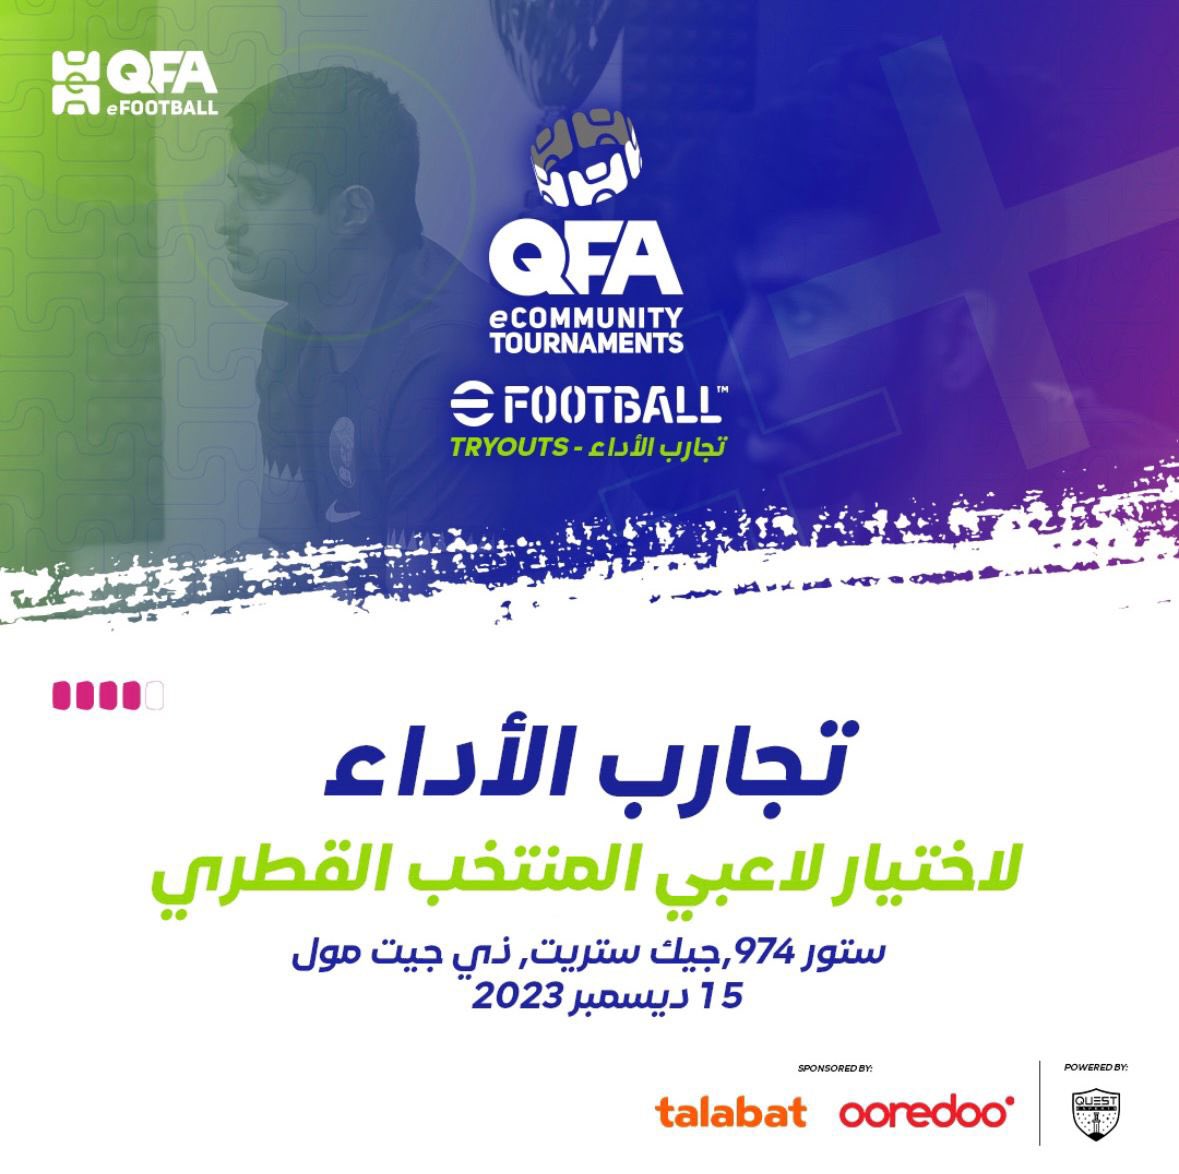 لكل محبين لعبة Konami-eFootball ، يسر الاتحاد القطري لكرة القدم أن يعلن عن فتح باب التجارب للانضمام إلى المنتخب القطري 🇶🇦🎮. لتسجيل عبر الرابط الآتي: forms.gle/UJTeXYpHegf6b6… انضموا إلينا يوم الجمعة 15 ديسمبر 2023 في GeekStreet، ليوم مليء بالمنافسة واكتشاف المواهب 😍.